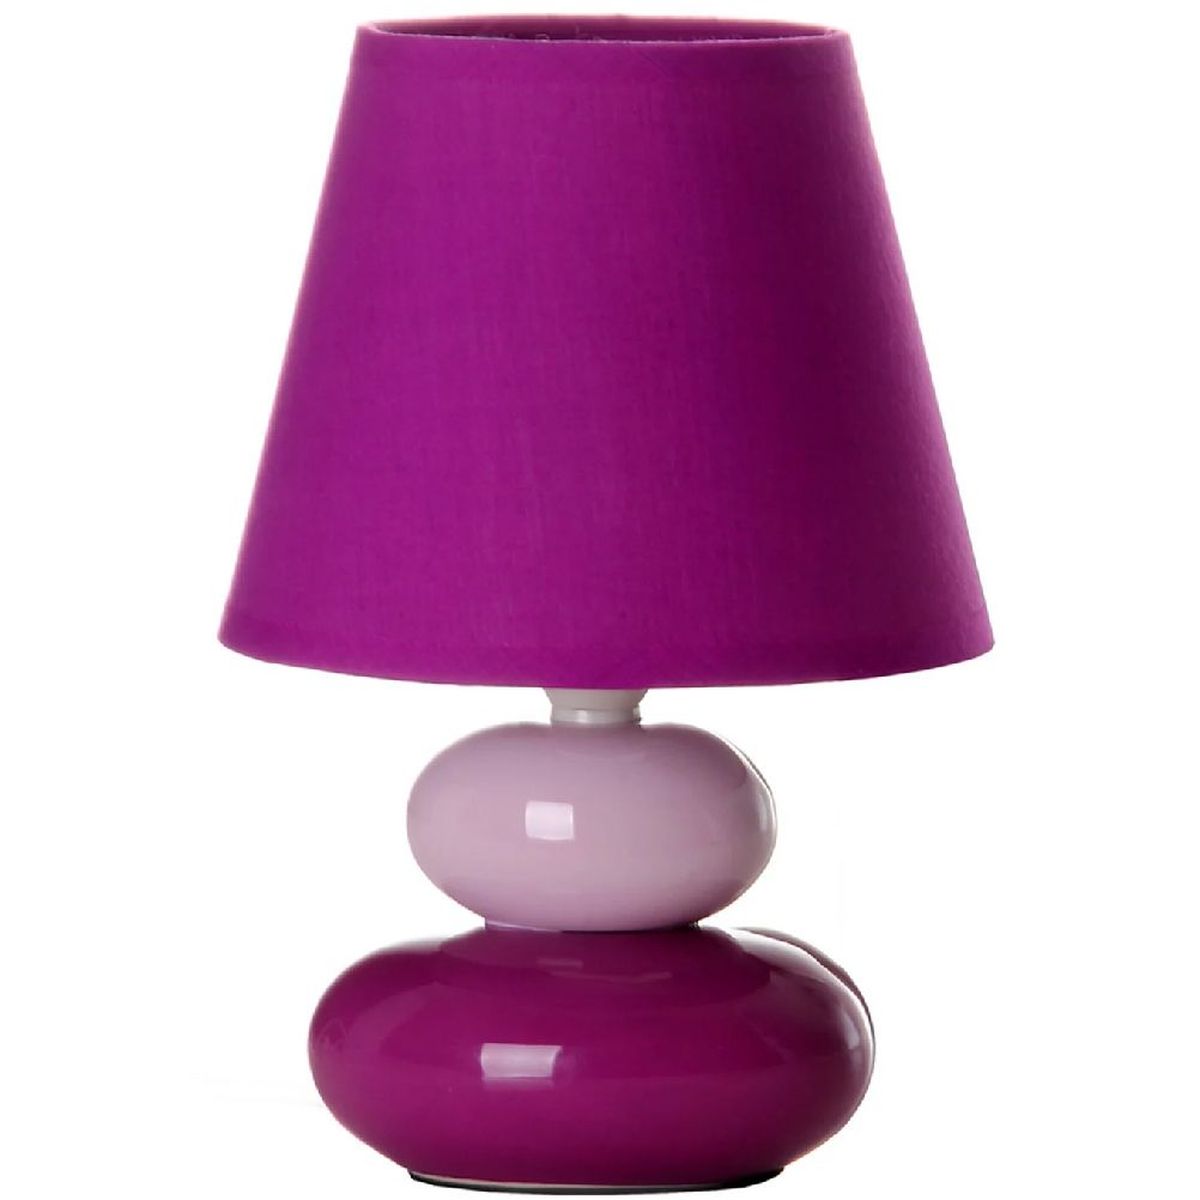 Ceramic lamp 22 cm